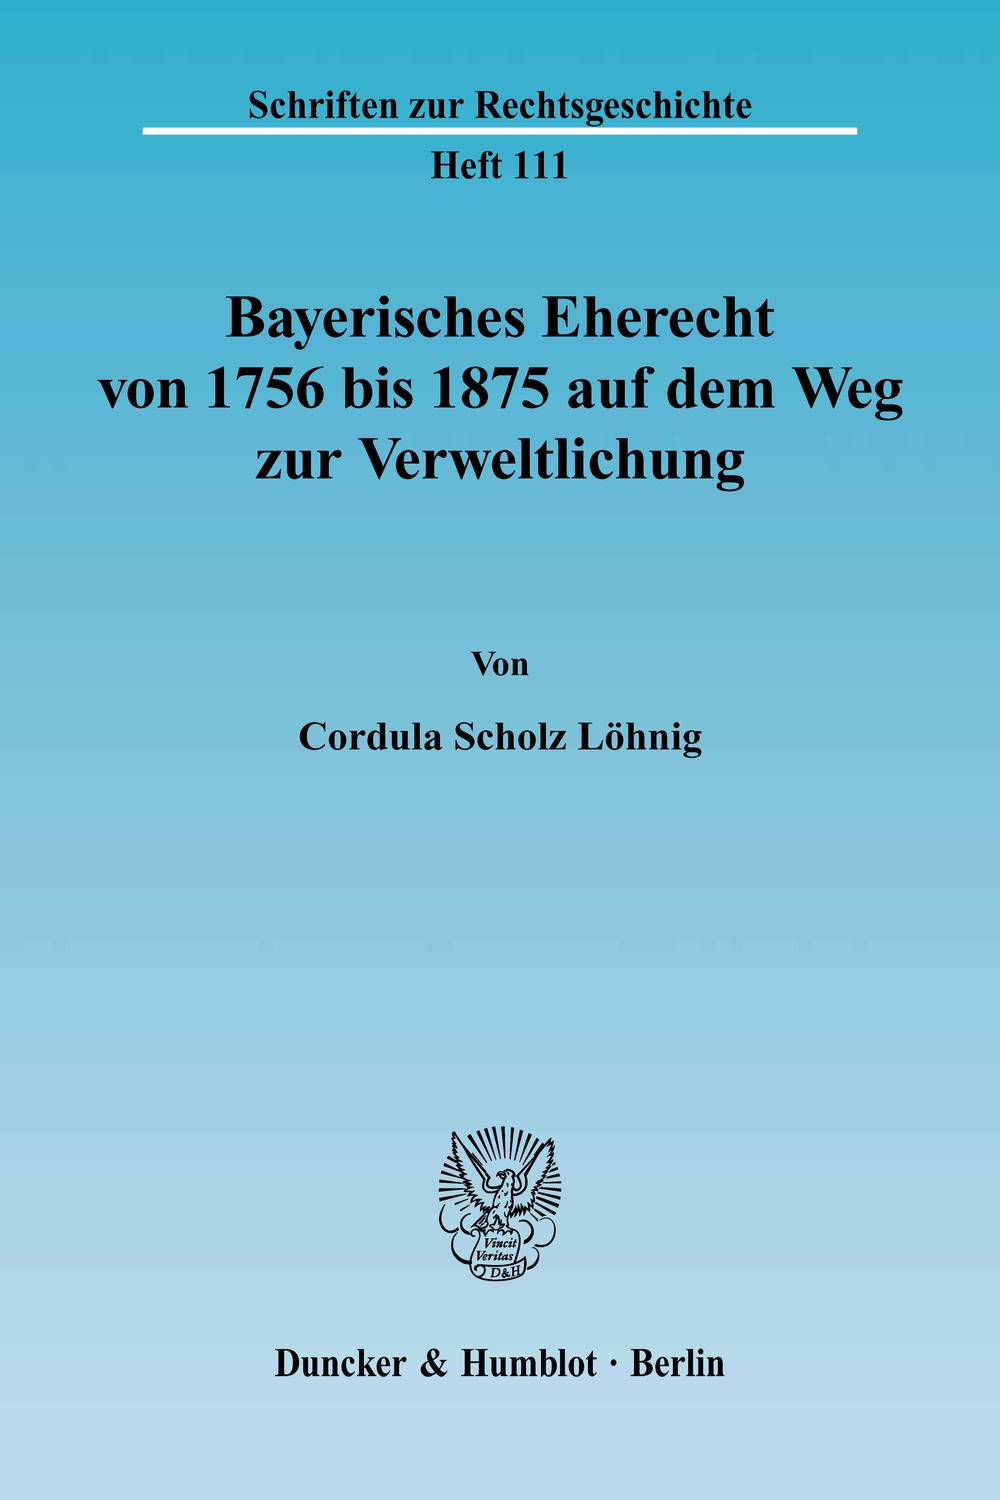 Bayerisches Eherecht von 1756 bis 1875 auf dem Weg zur Verweltlichung. - Cordula Scholz Löhnig